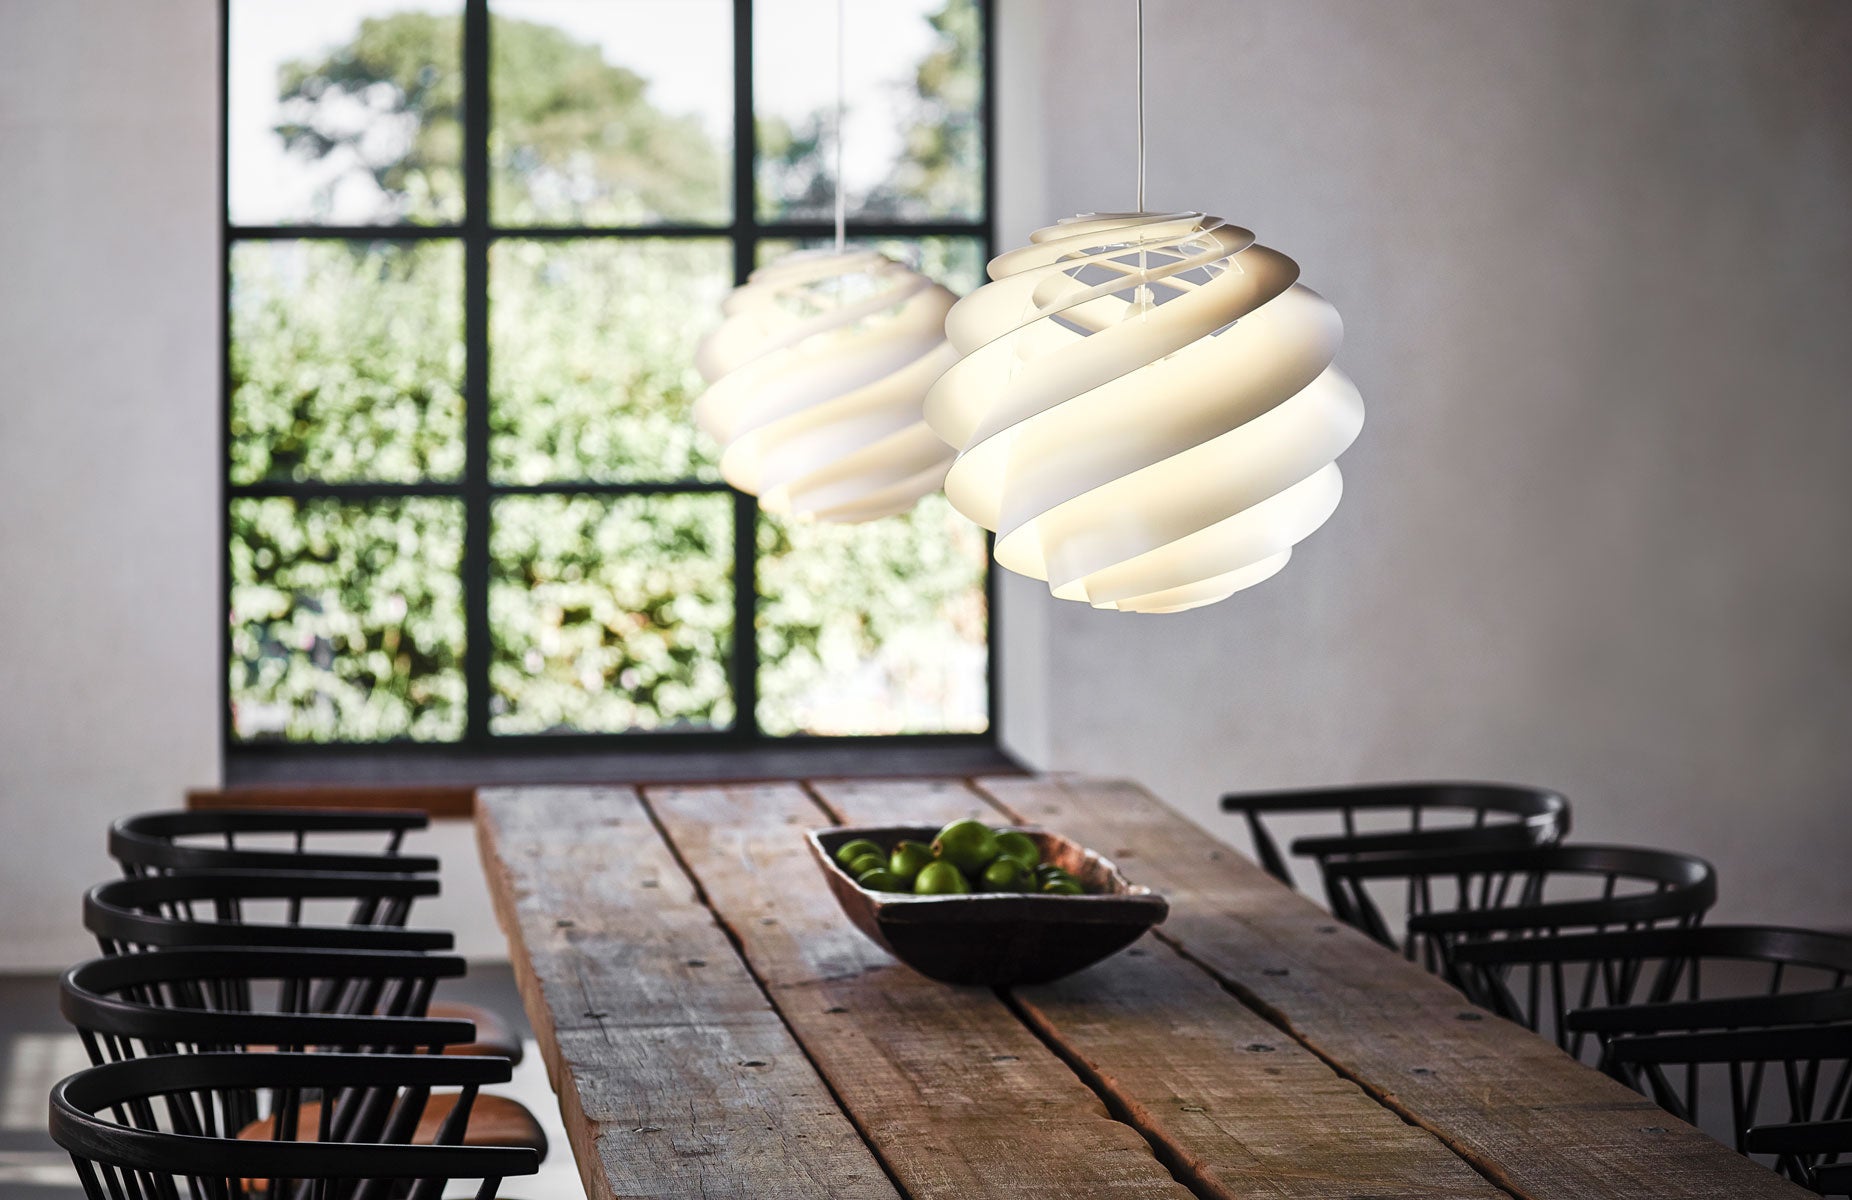 Le lamper | dansk design inden for belysning